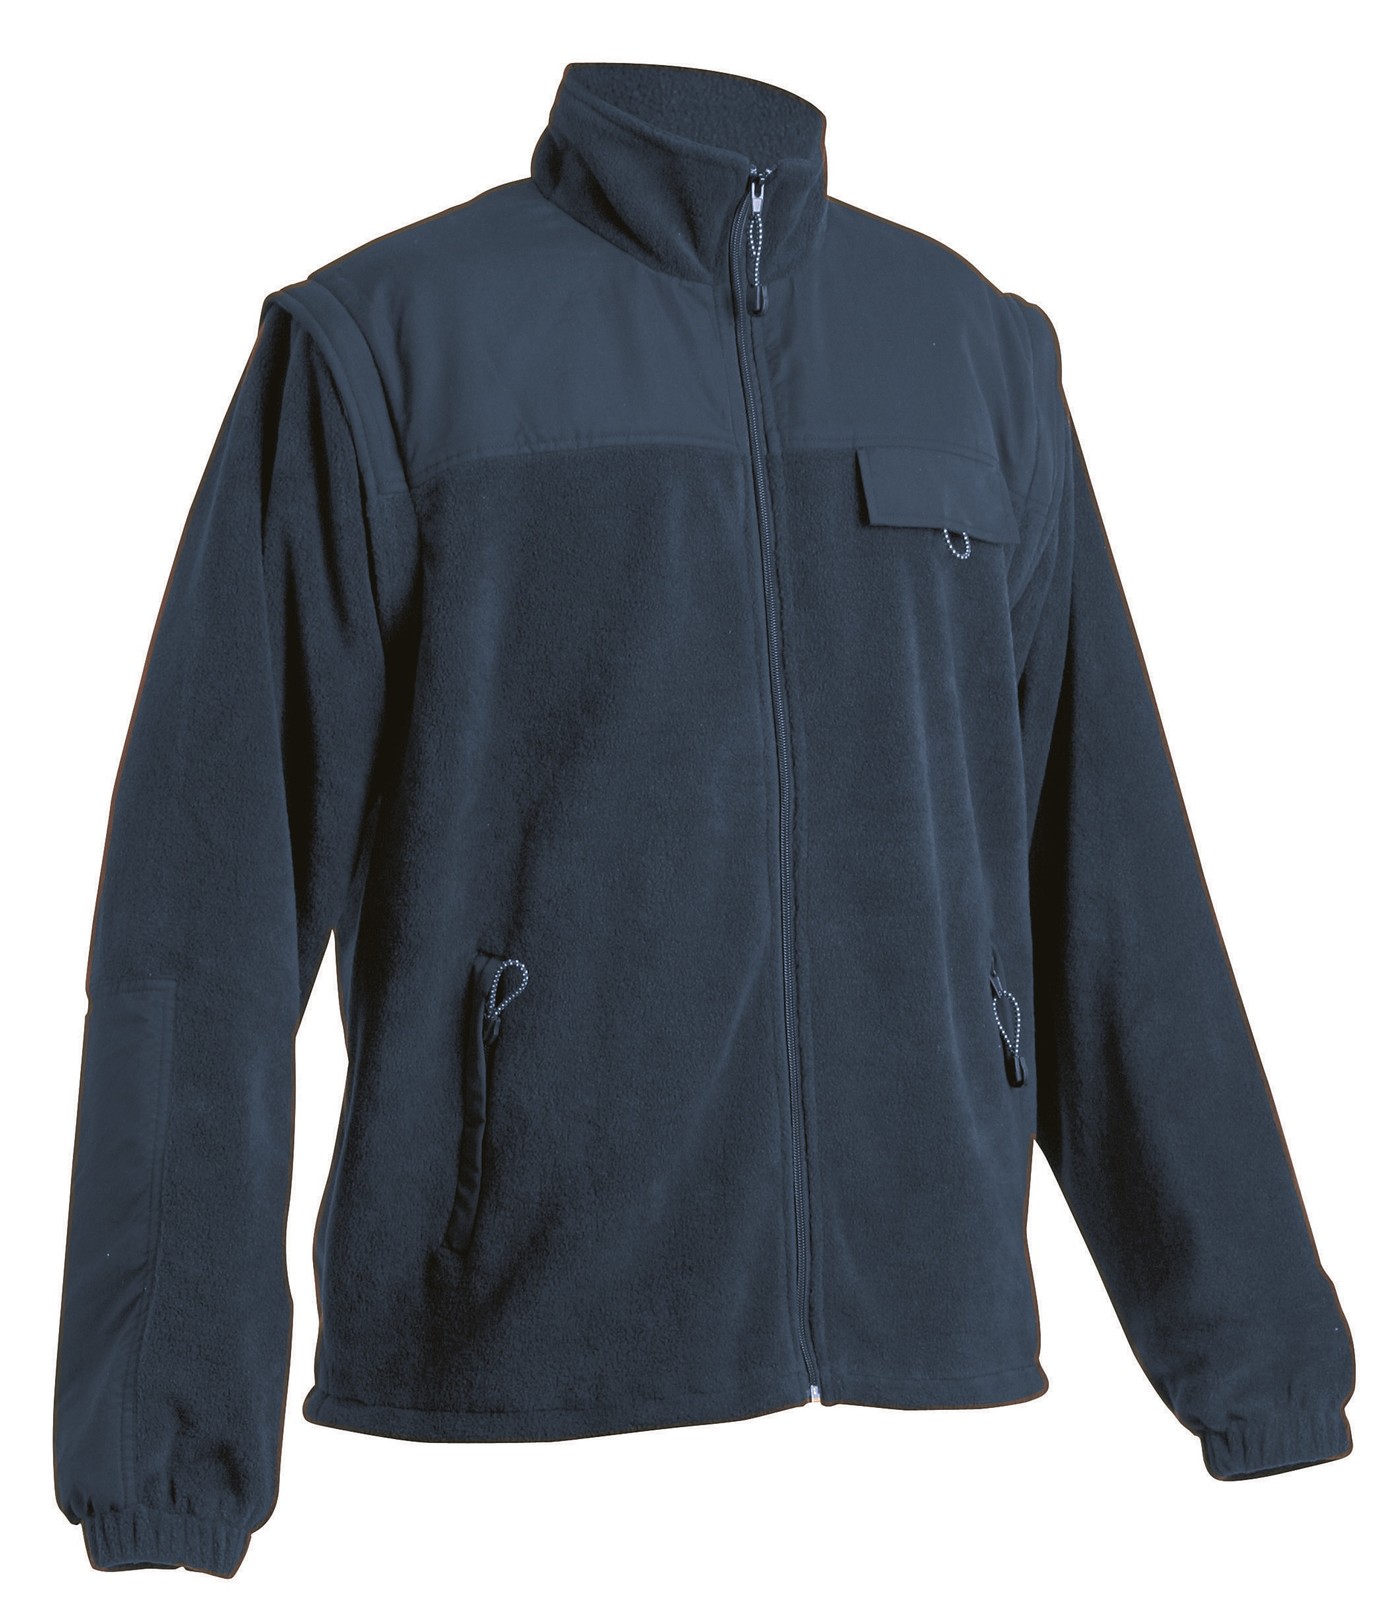 Fleece bunda Randwik 2v1 pánska - veľkosť: L, farba: navy